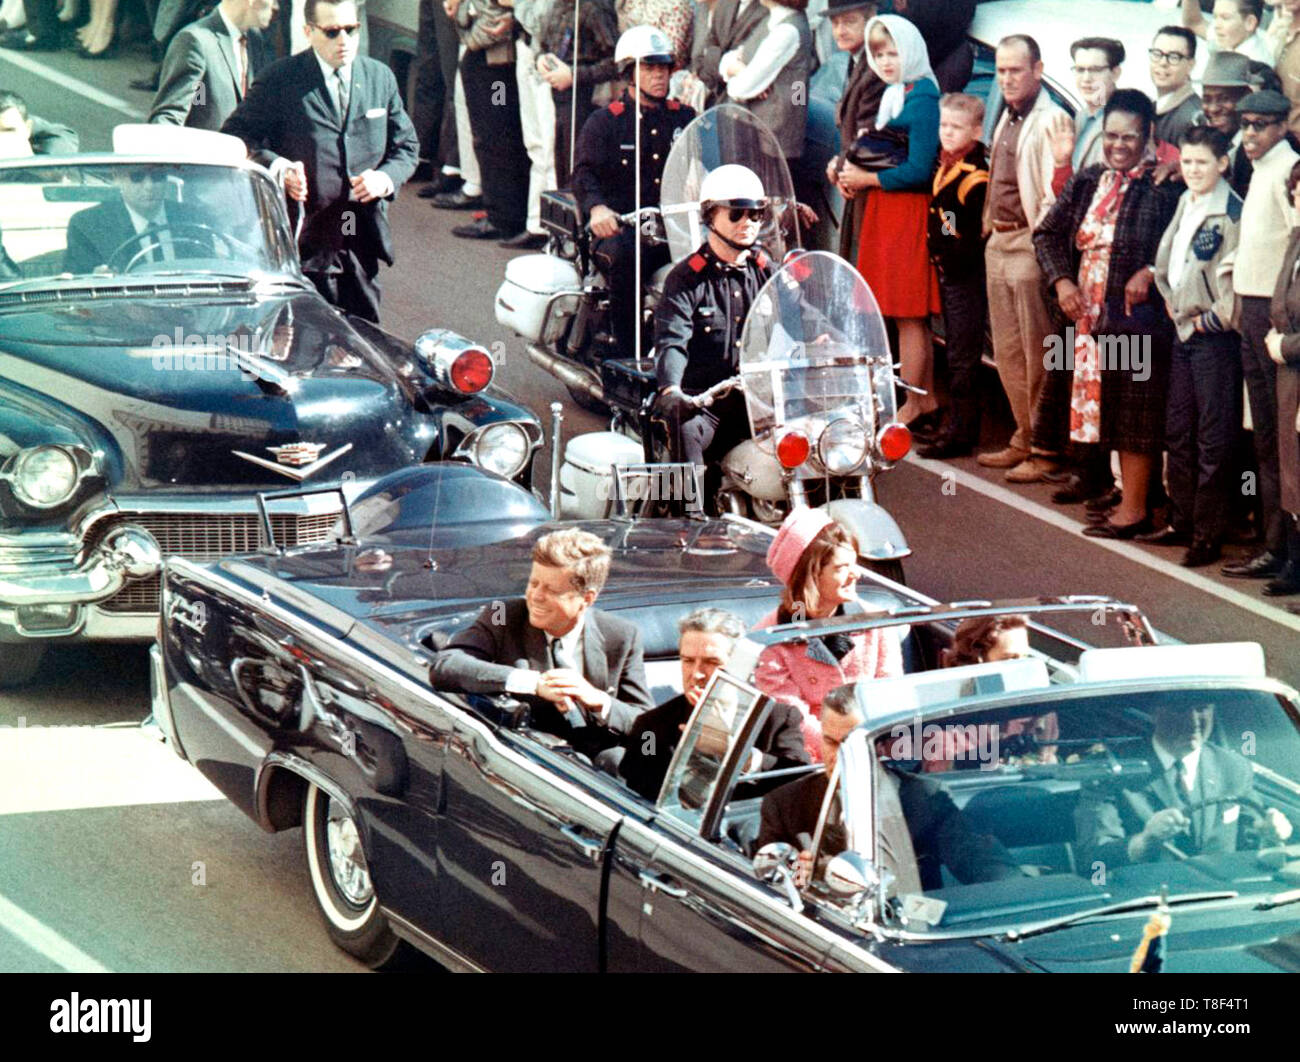 Immagine del presidente Kennedy in limousine a Dallas, in Texas, sulla strada principale e a pochi minuti prima dell'assassinio. Anche in limousine presidenziale sono Jackie Kennedy, Texas Governor John Connally, e sua moglie, Nellie. Novembre 22, 1963 Foto Stock